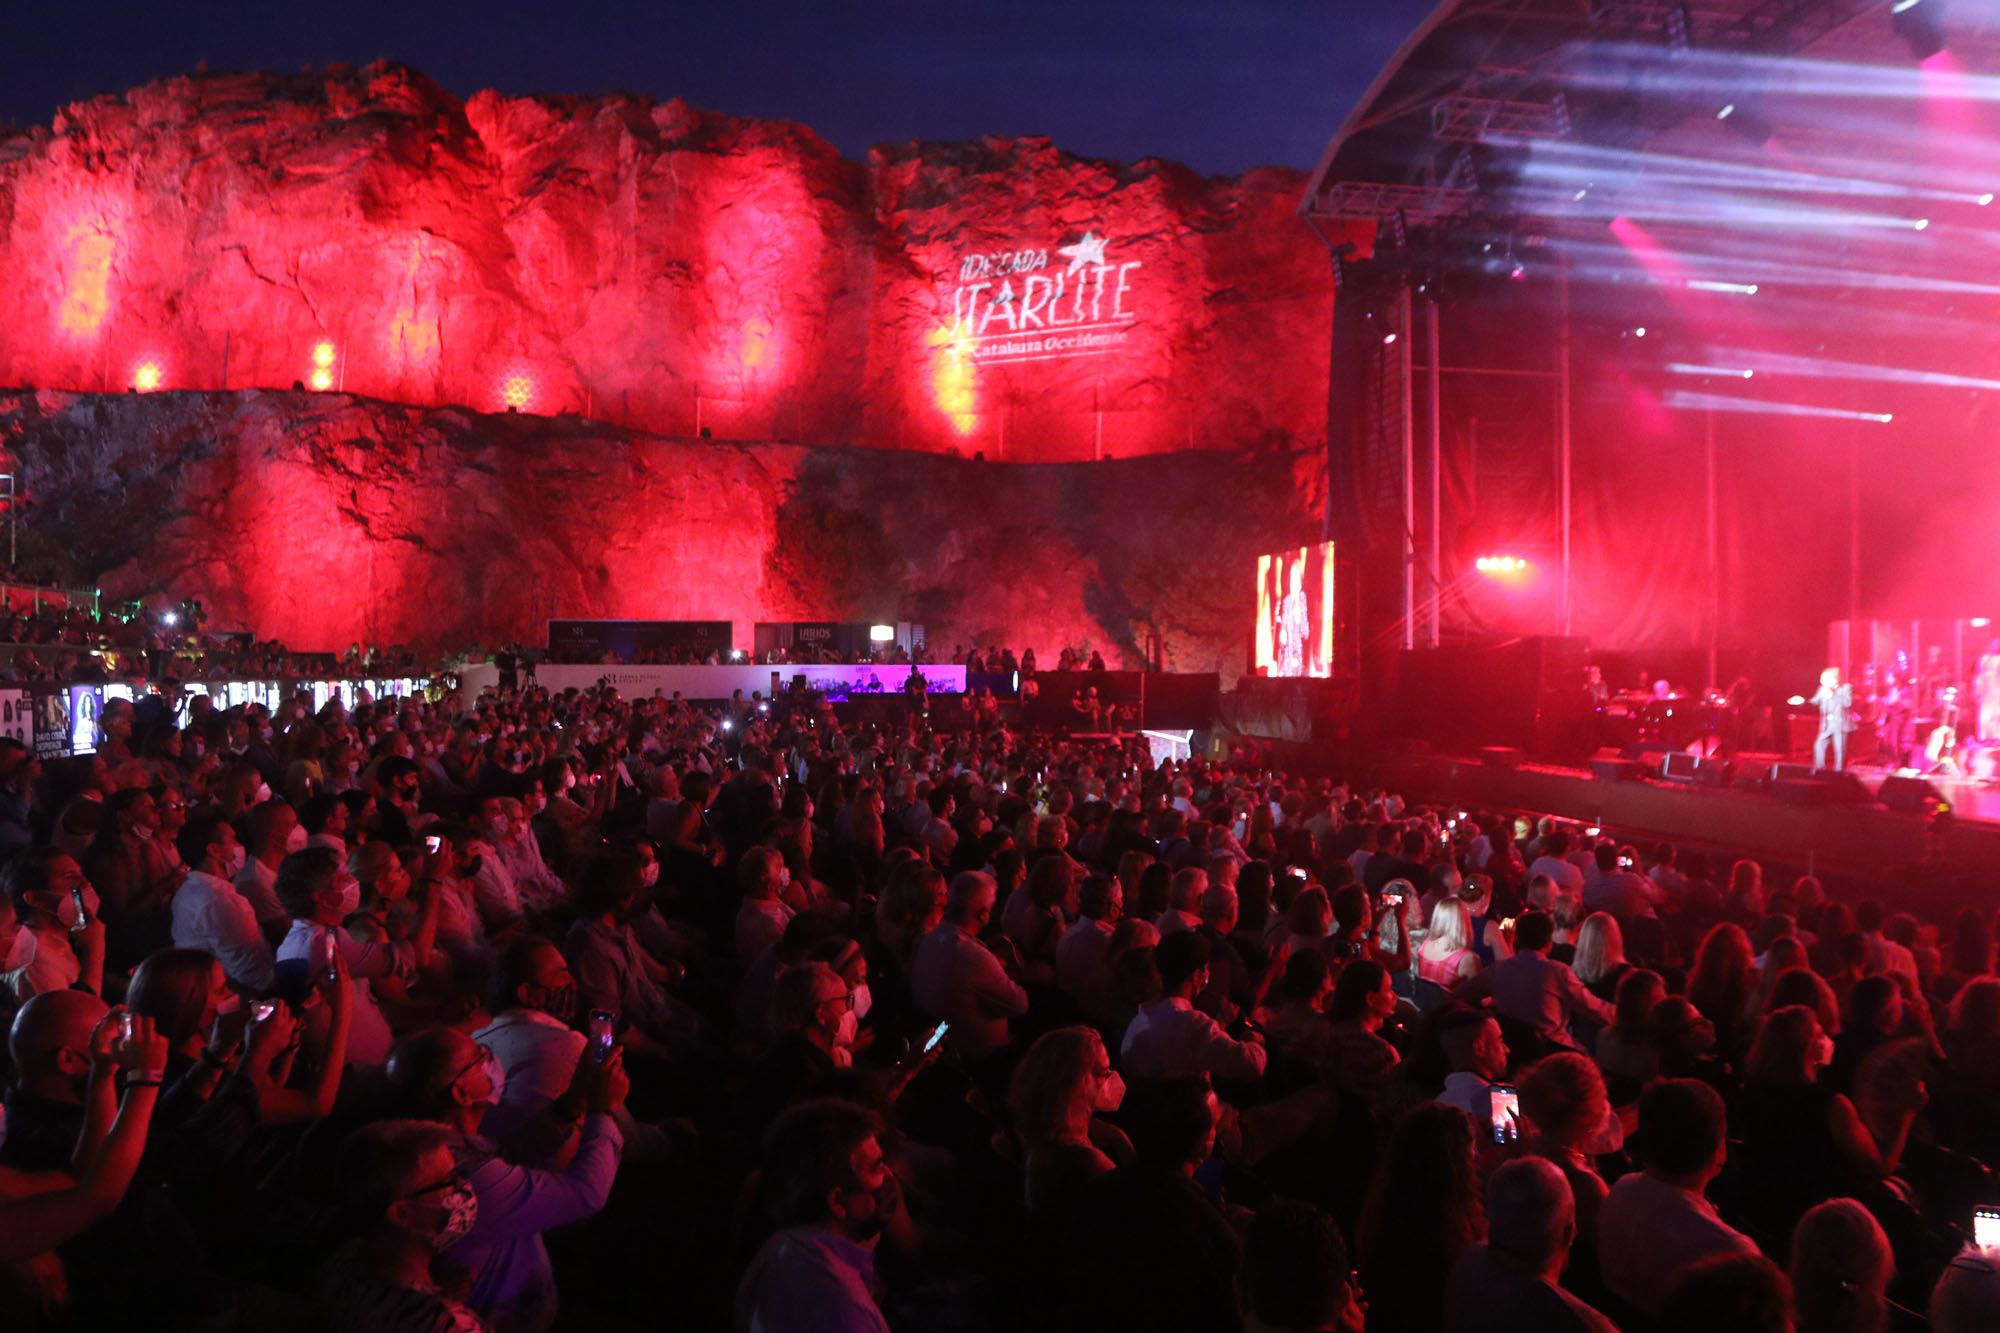 Las imágenes del segundo concierto de Raphael en el Starlite Festival de Marbella de 2021.